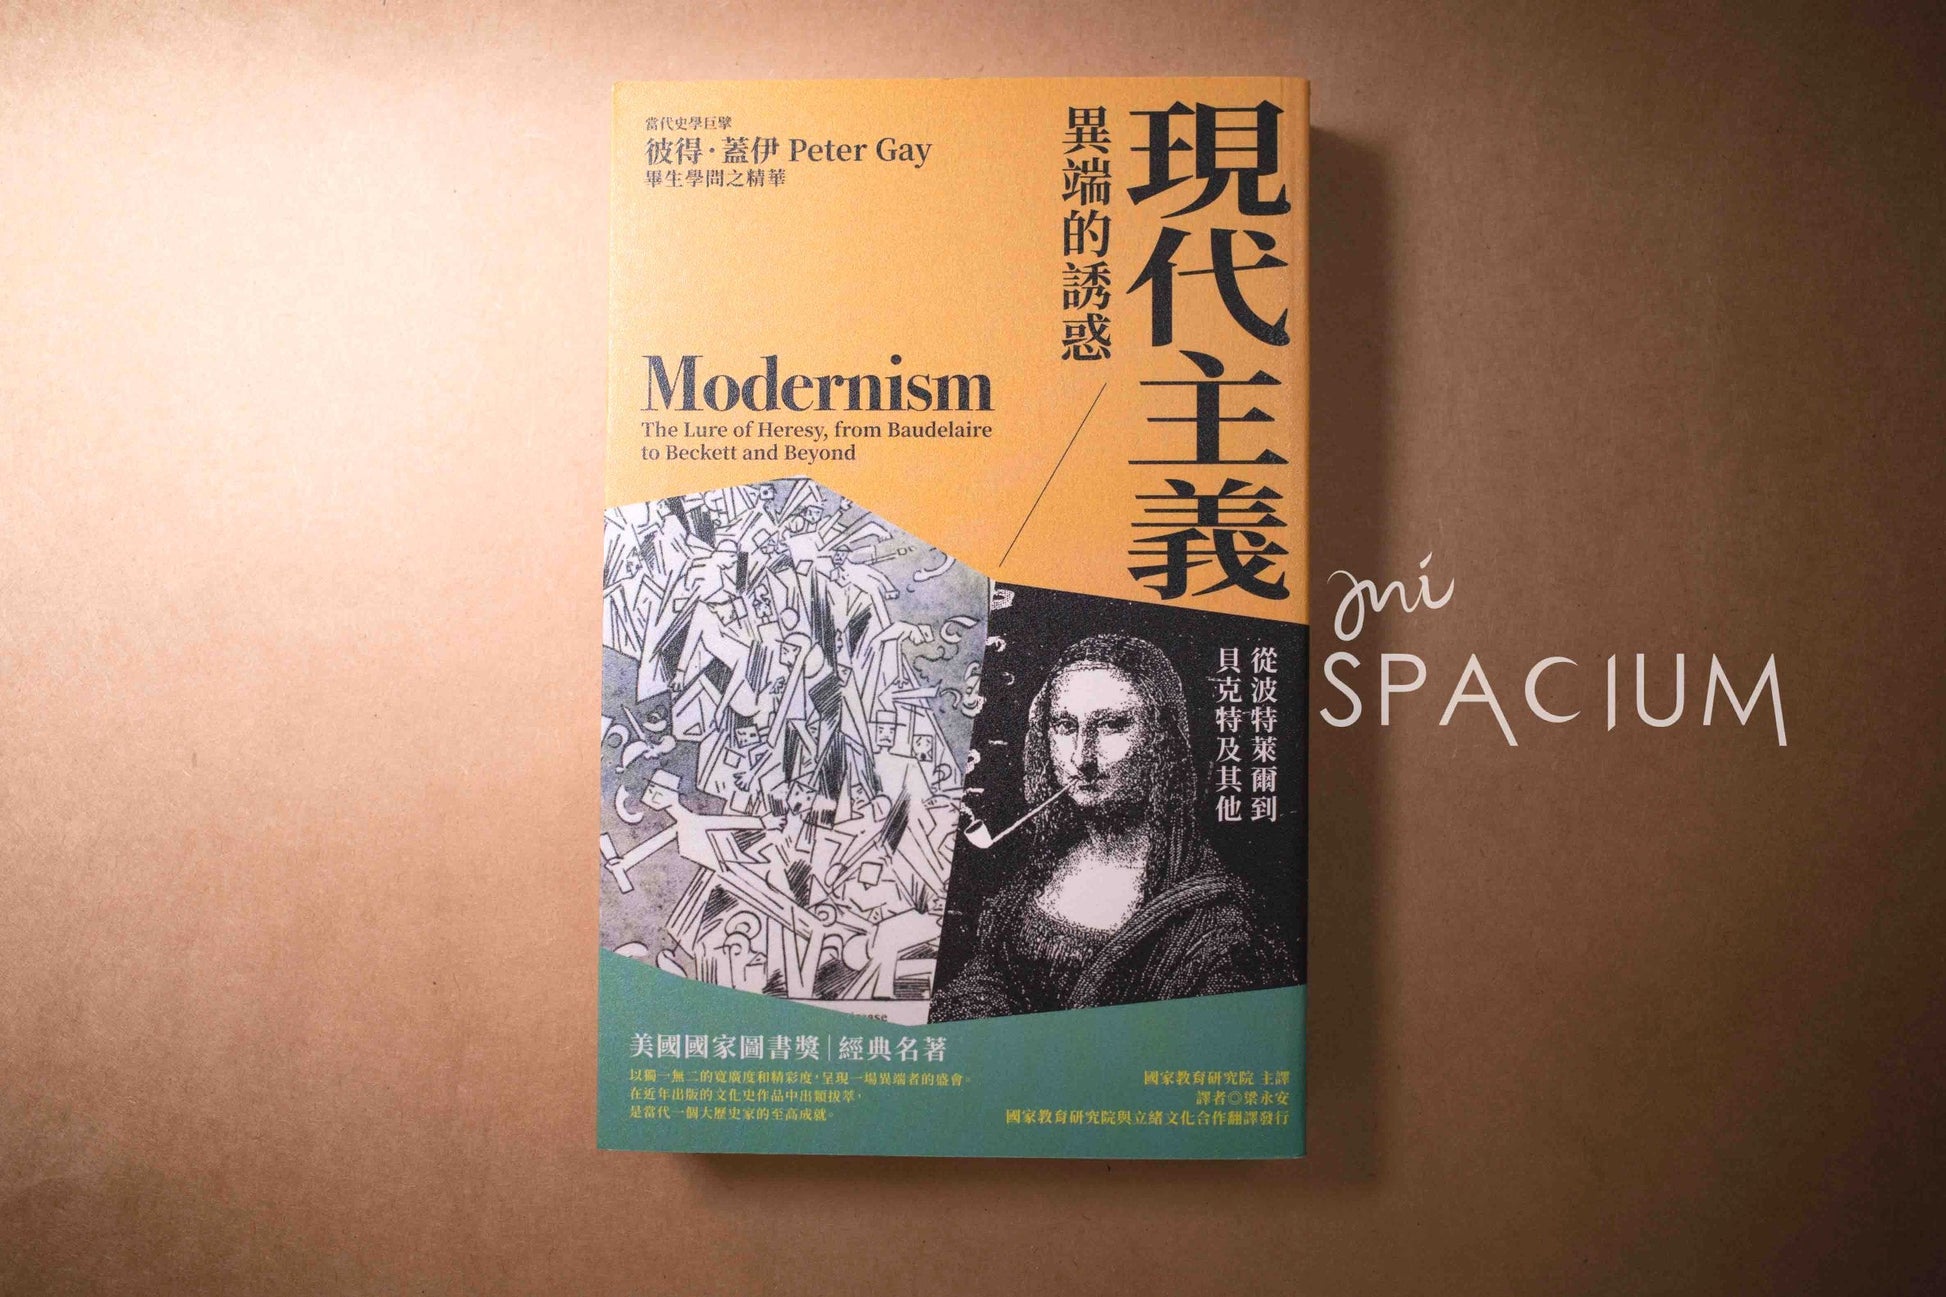 【新書】現代主義的異端的誘惑 - Mi Spacium Design Studio - 文化研究 Cultural Studies